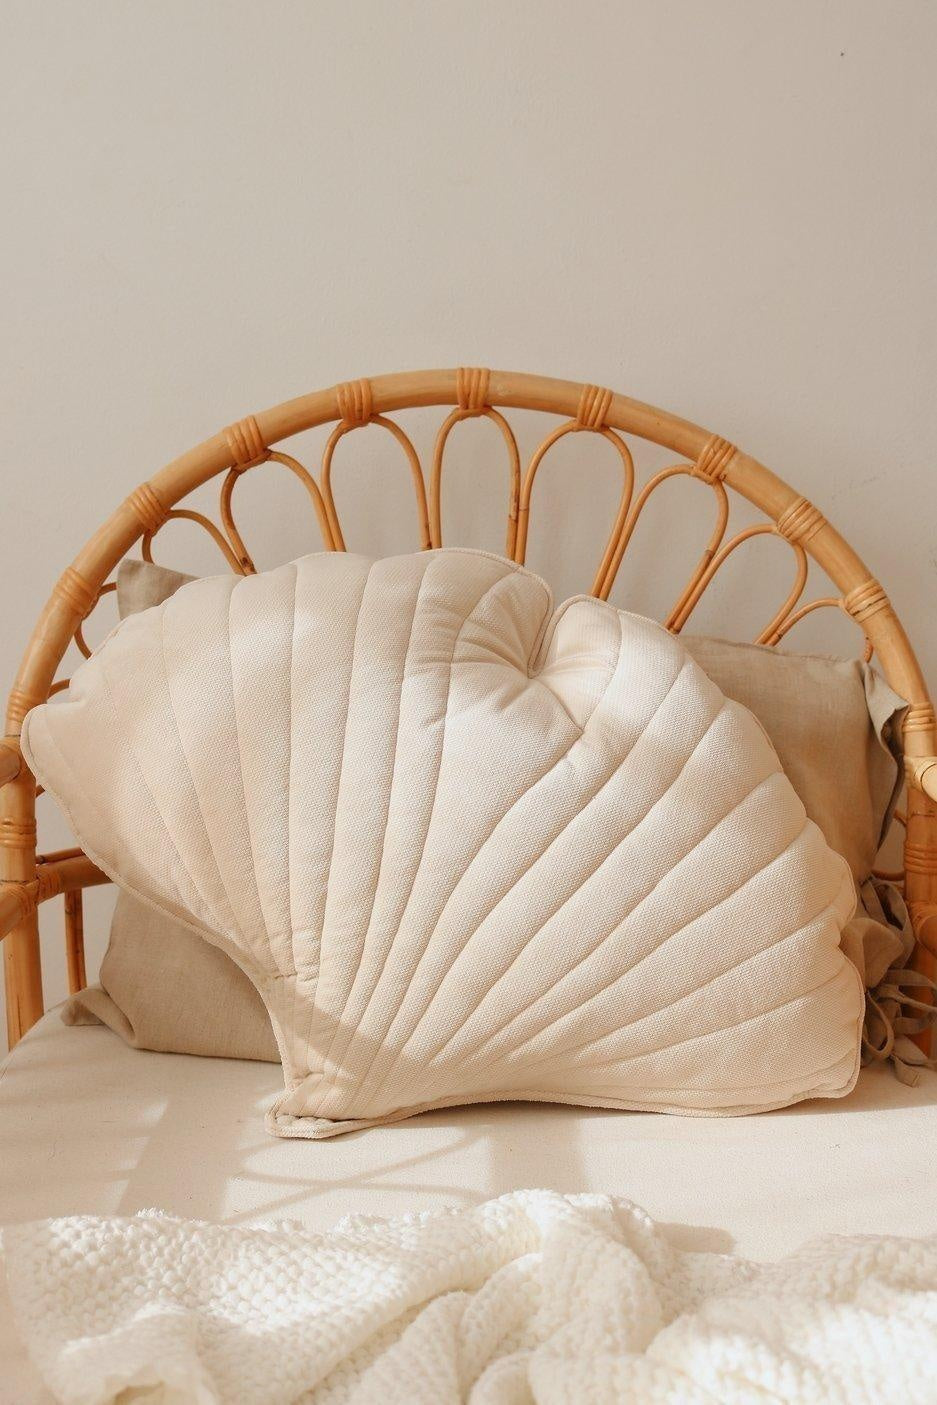 Ginkgo Leaf Pillow Velvet “Cream” | Kids Room & Nursery Decor